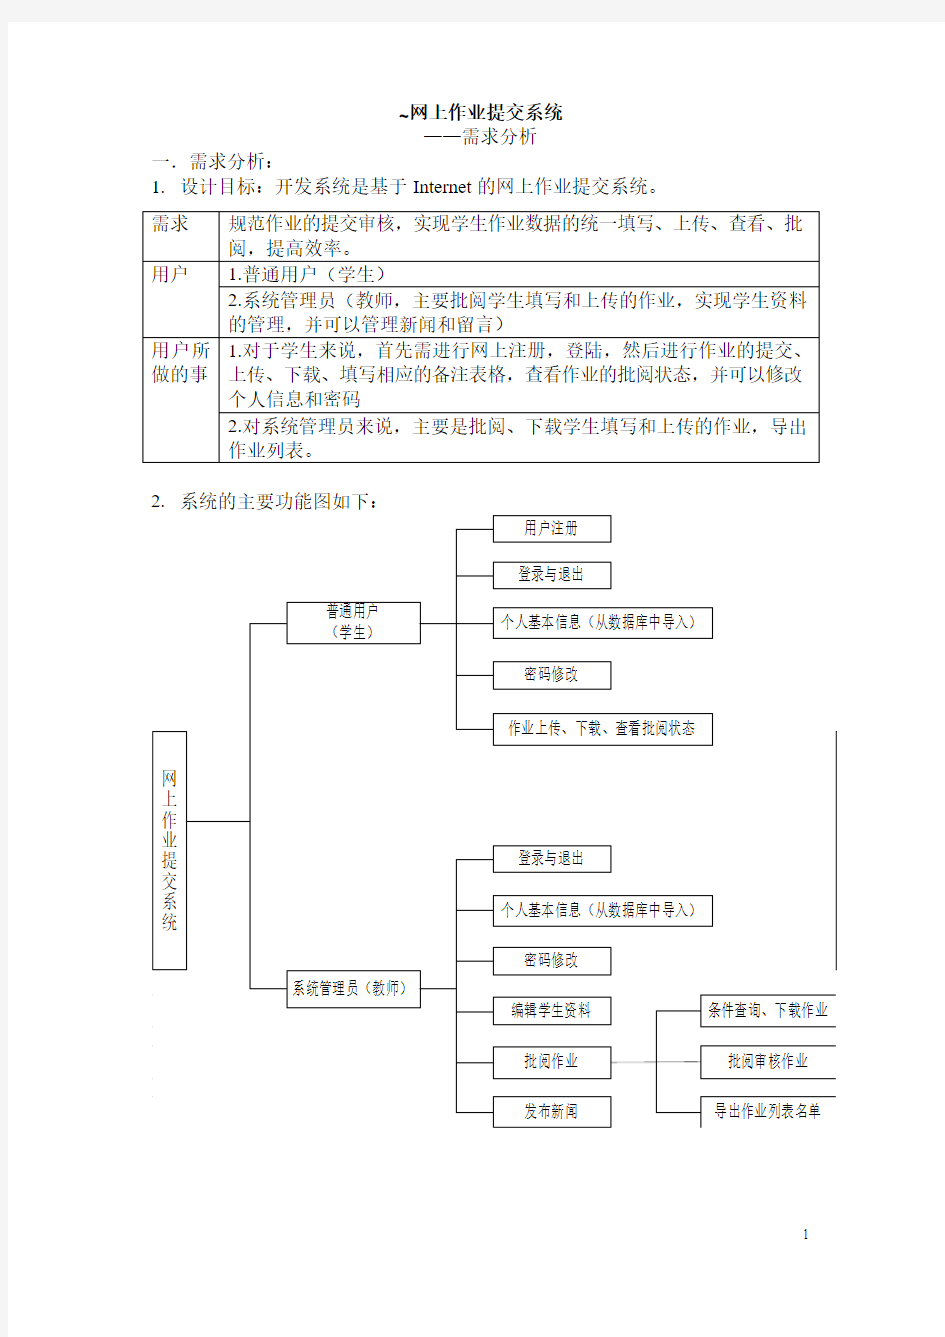 网上作业提交系统系统设计方案模板